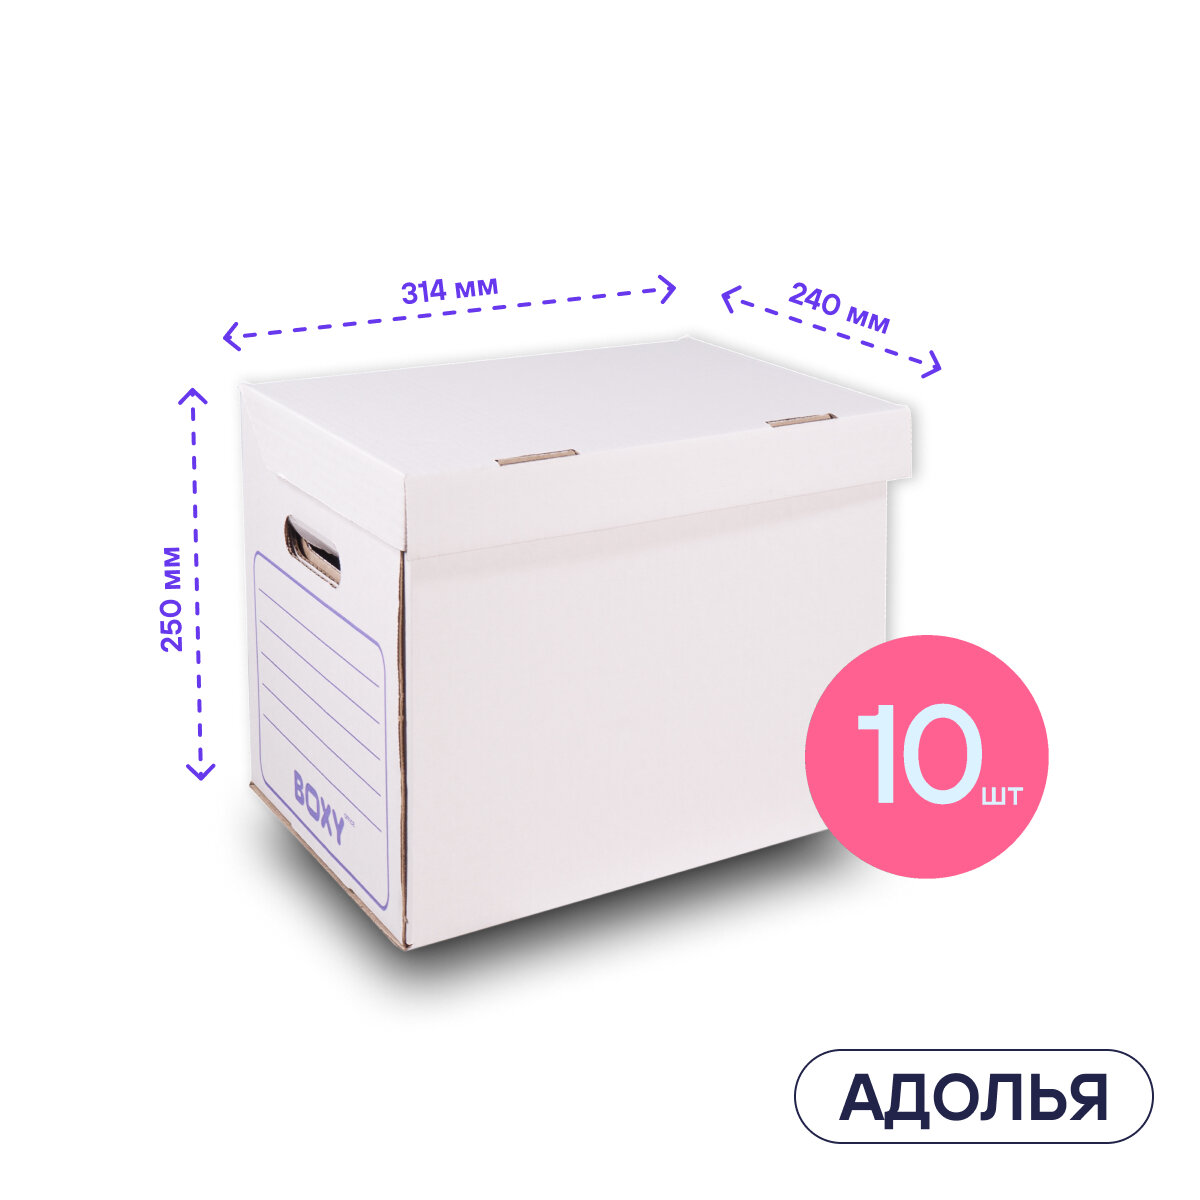 Белая архивная коробка для офиса и дома адолья BOXY, гофрокартон, 34х25х26 см, 10 шт в упаковке